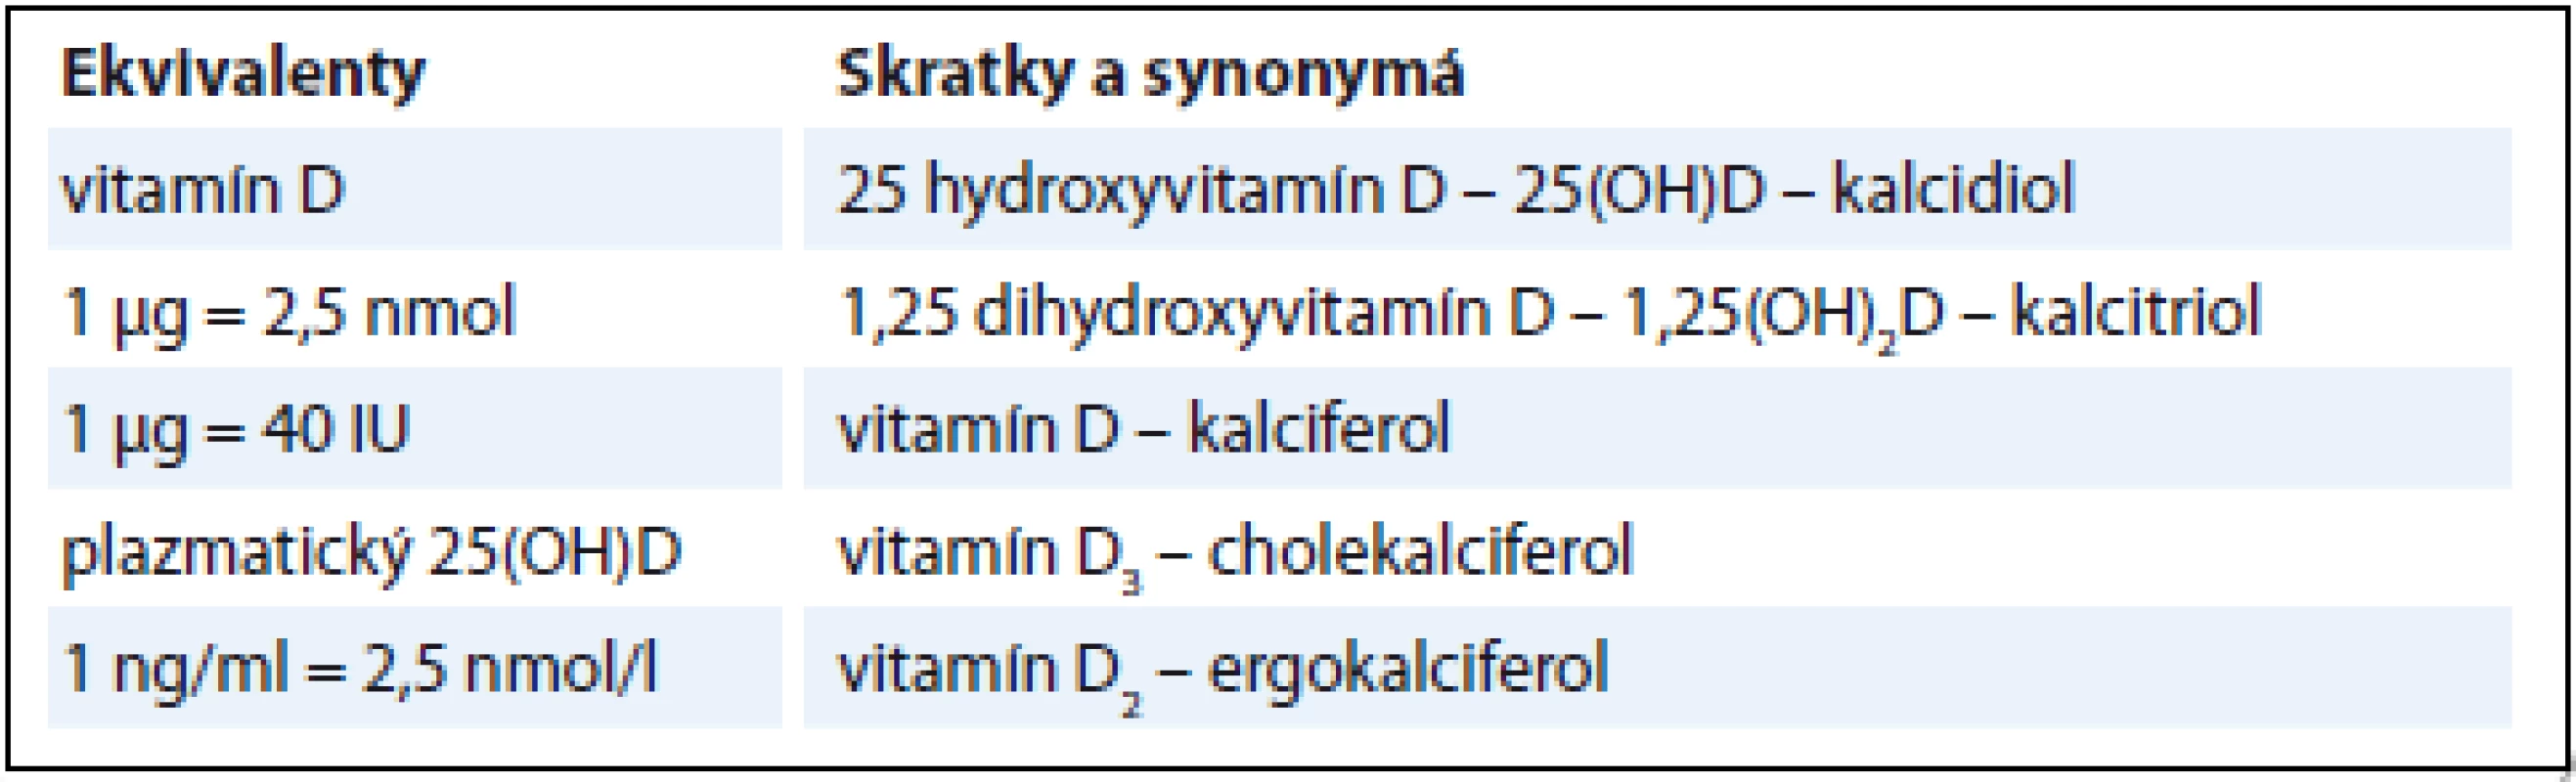 Terminológia vitamínu D, ekvivalenty, skratky a synonymá.